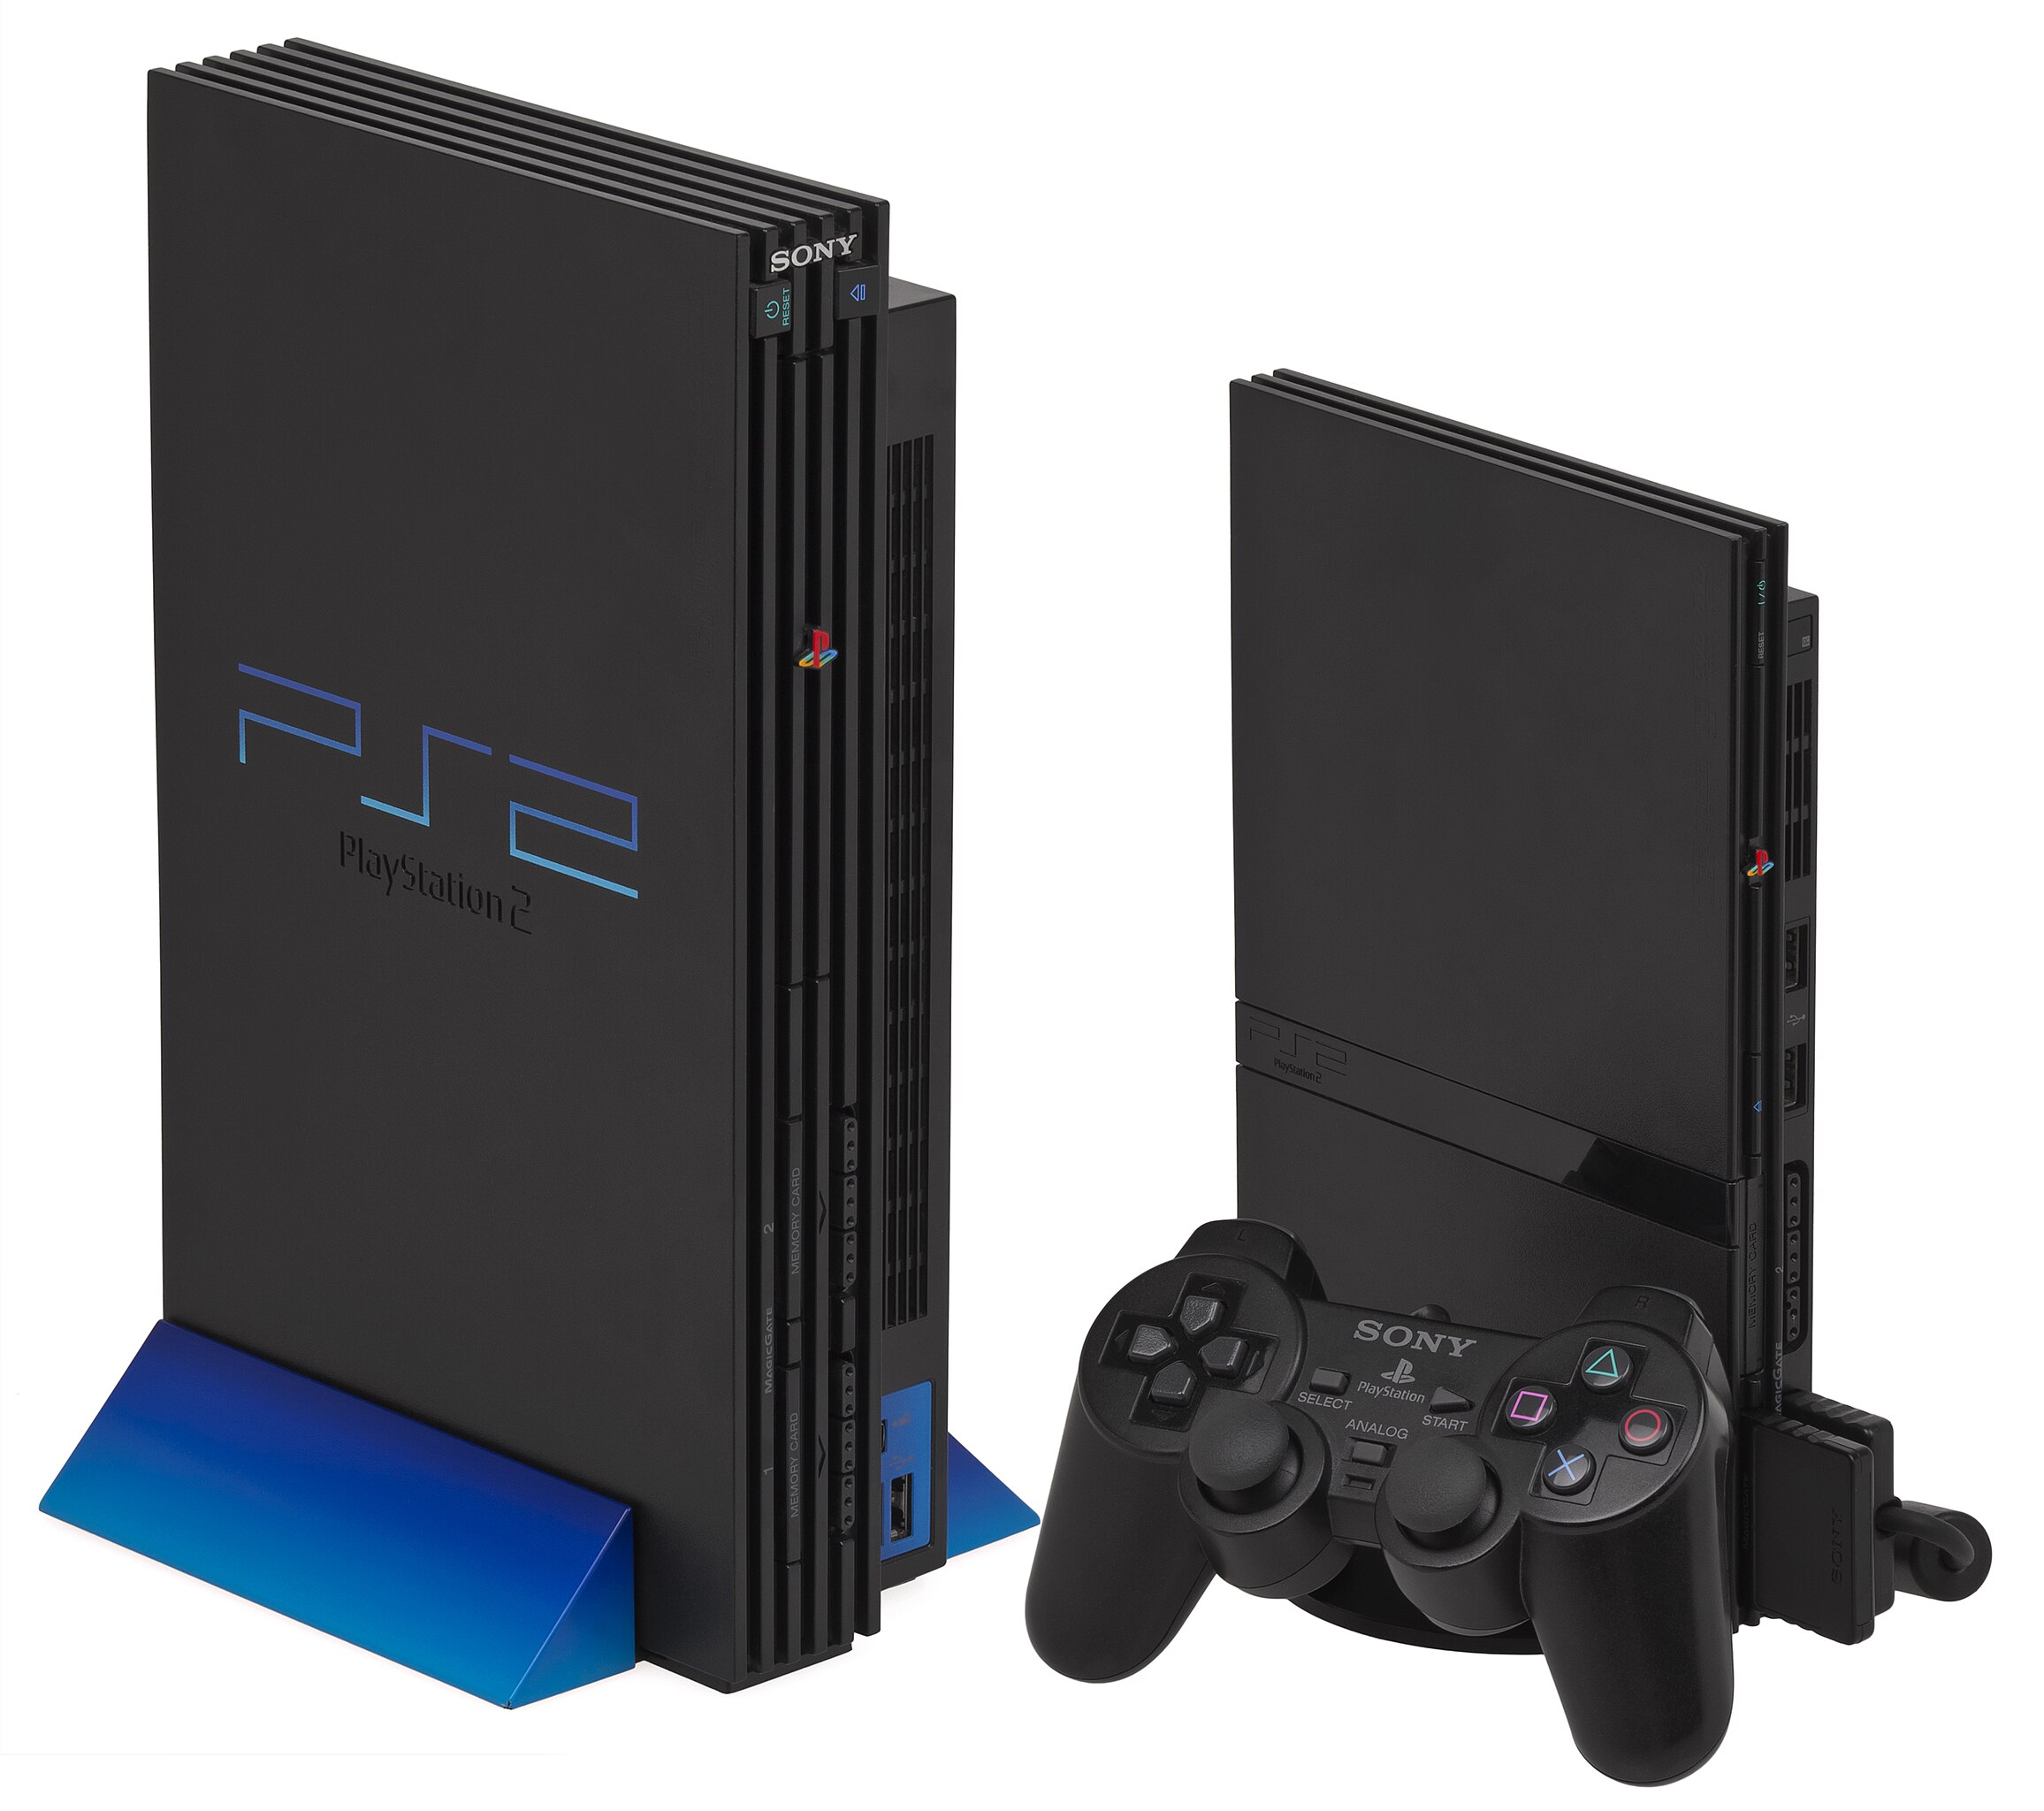 Archivista publica los manuales de todos los juegos de PS2 en 4K